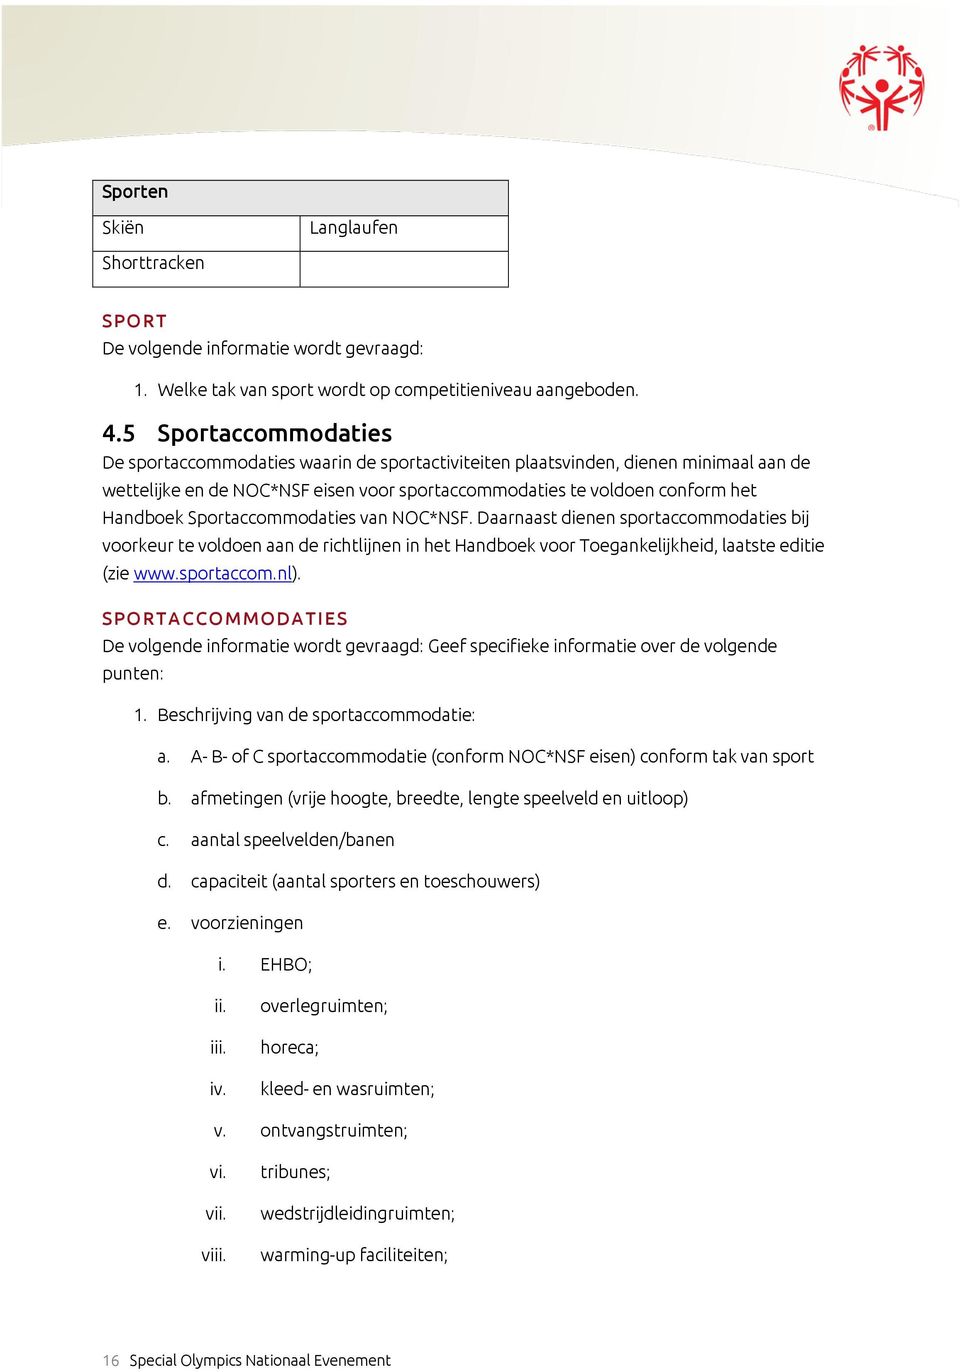 Sportaccommodaties van NOC*NSF. Daarnaast dienen sportaccommodaties bij voorkeur te voldoen aan de richtlijnen in het Handboek voor Toegankelijkheid, laatste editie (zie www.sportaccom.nl).